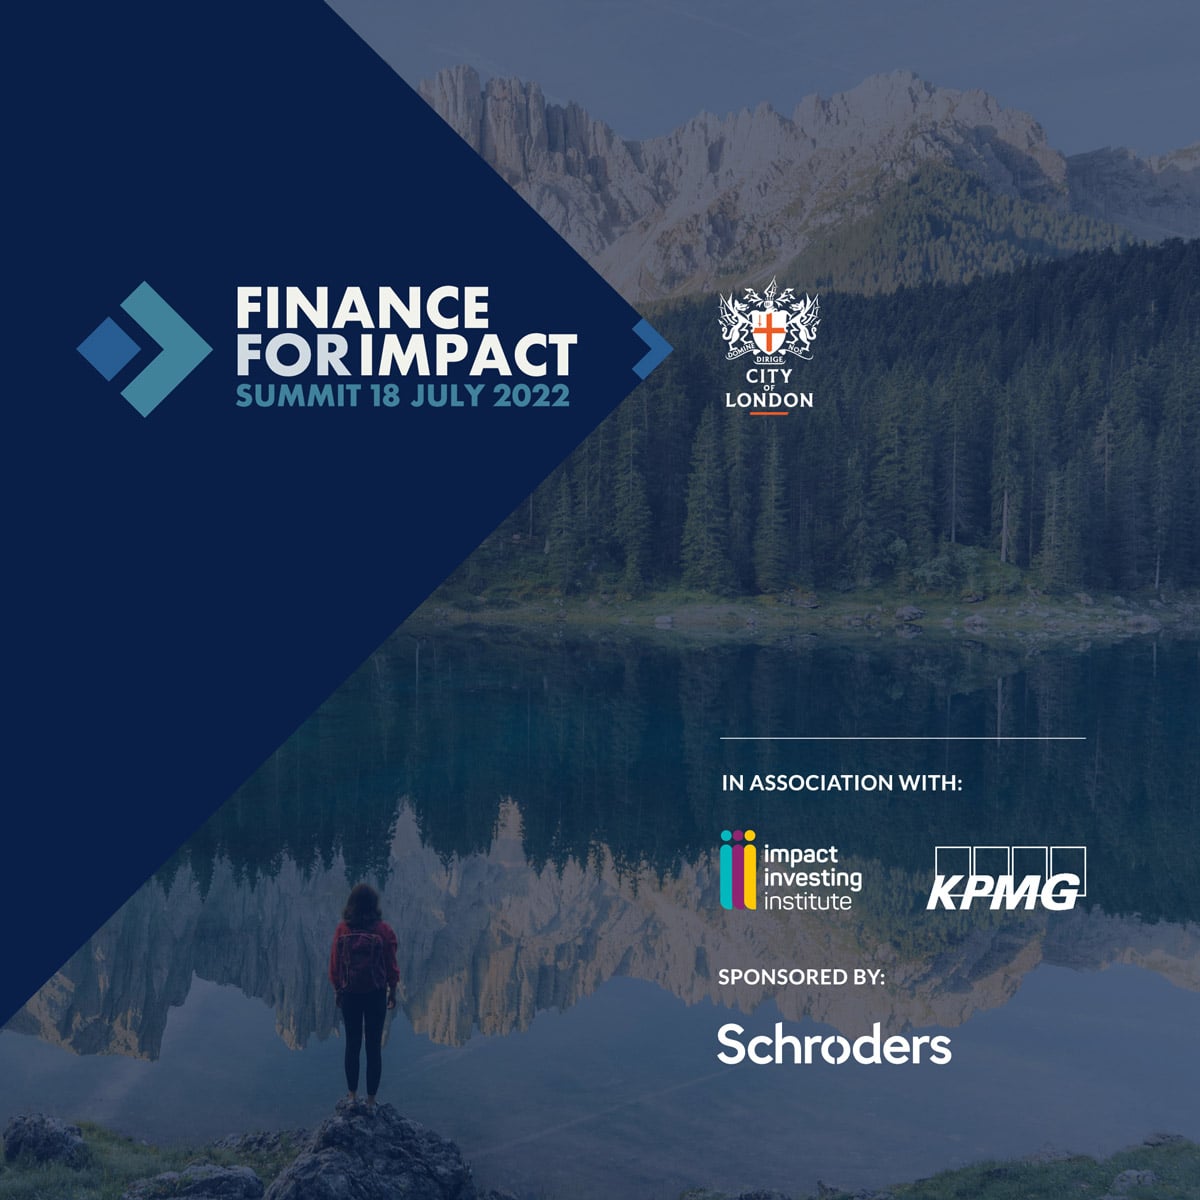 Finance for Impact Branding